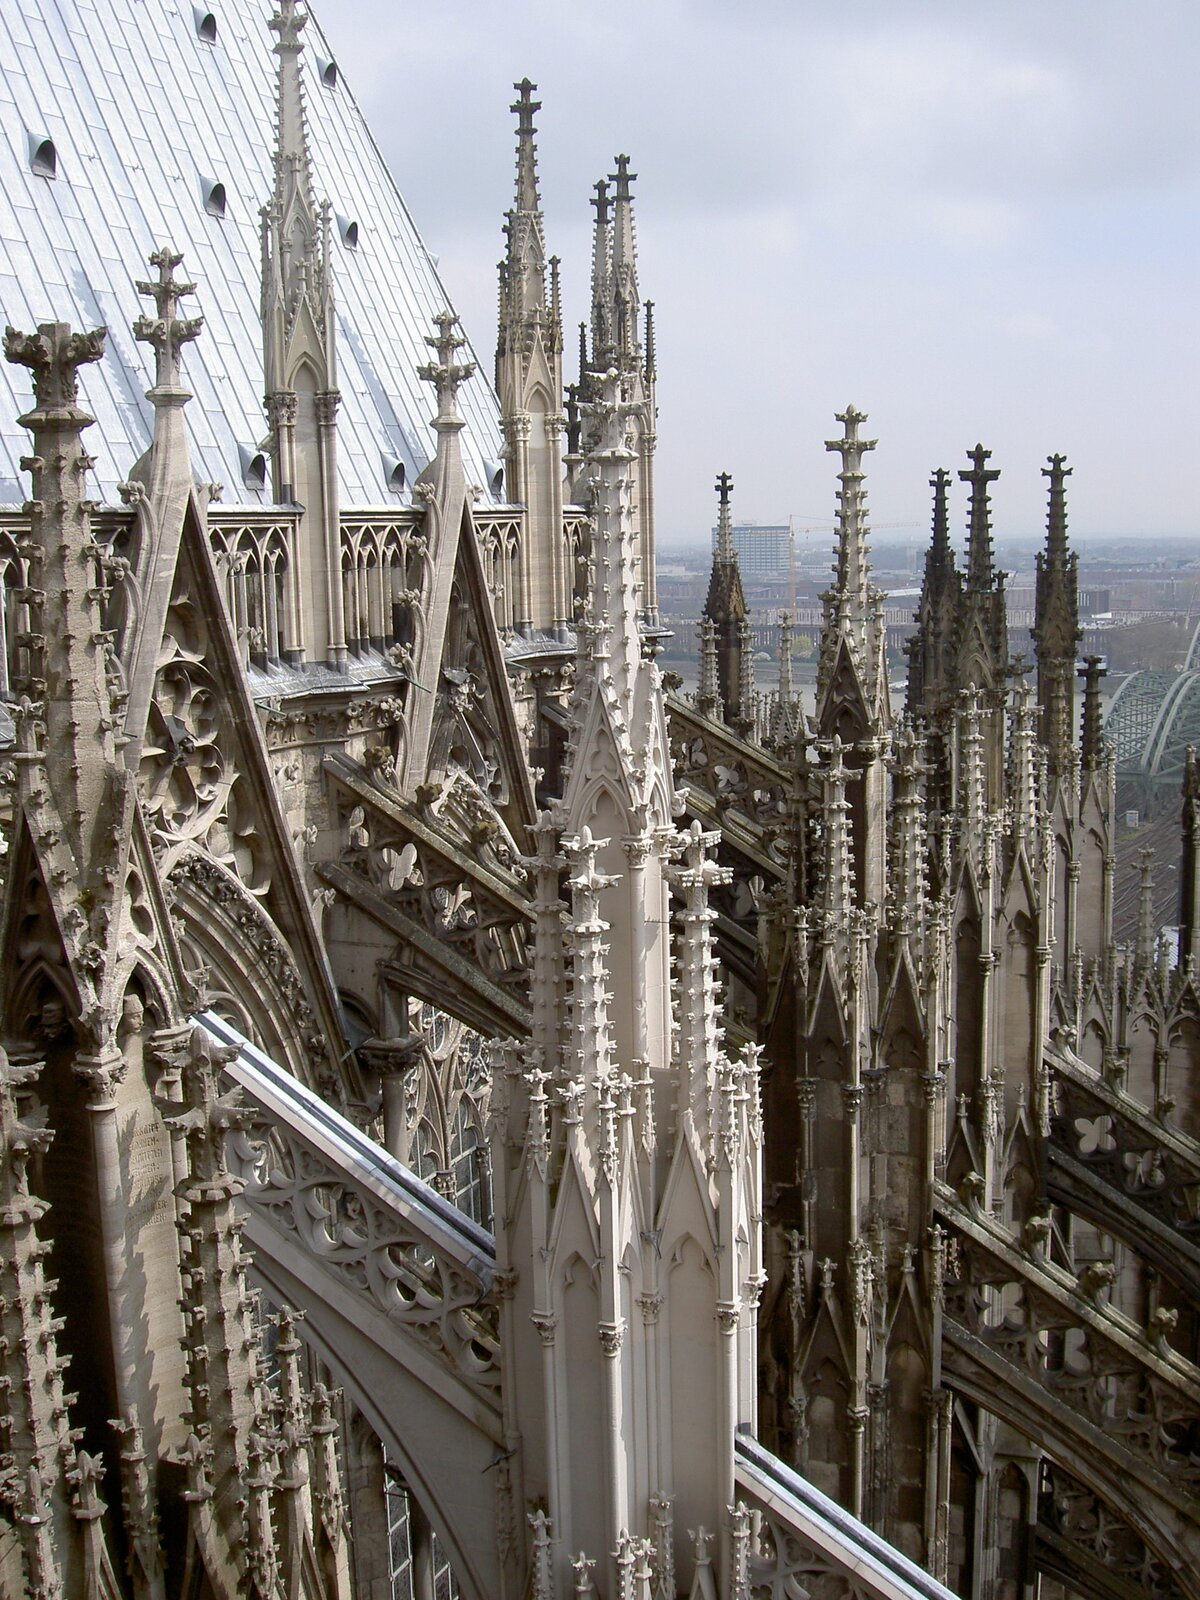 Fotografia przedstawia widok na przypory prezbiterium Katedry św. Piotra i Najświętszej Marii Panny w Kolonii w Niemczech. Na tle katedry rozciąga się zachmurzone niebo wraz z fragmentem miasta.